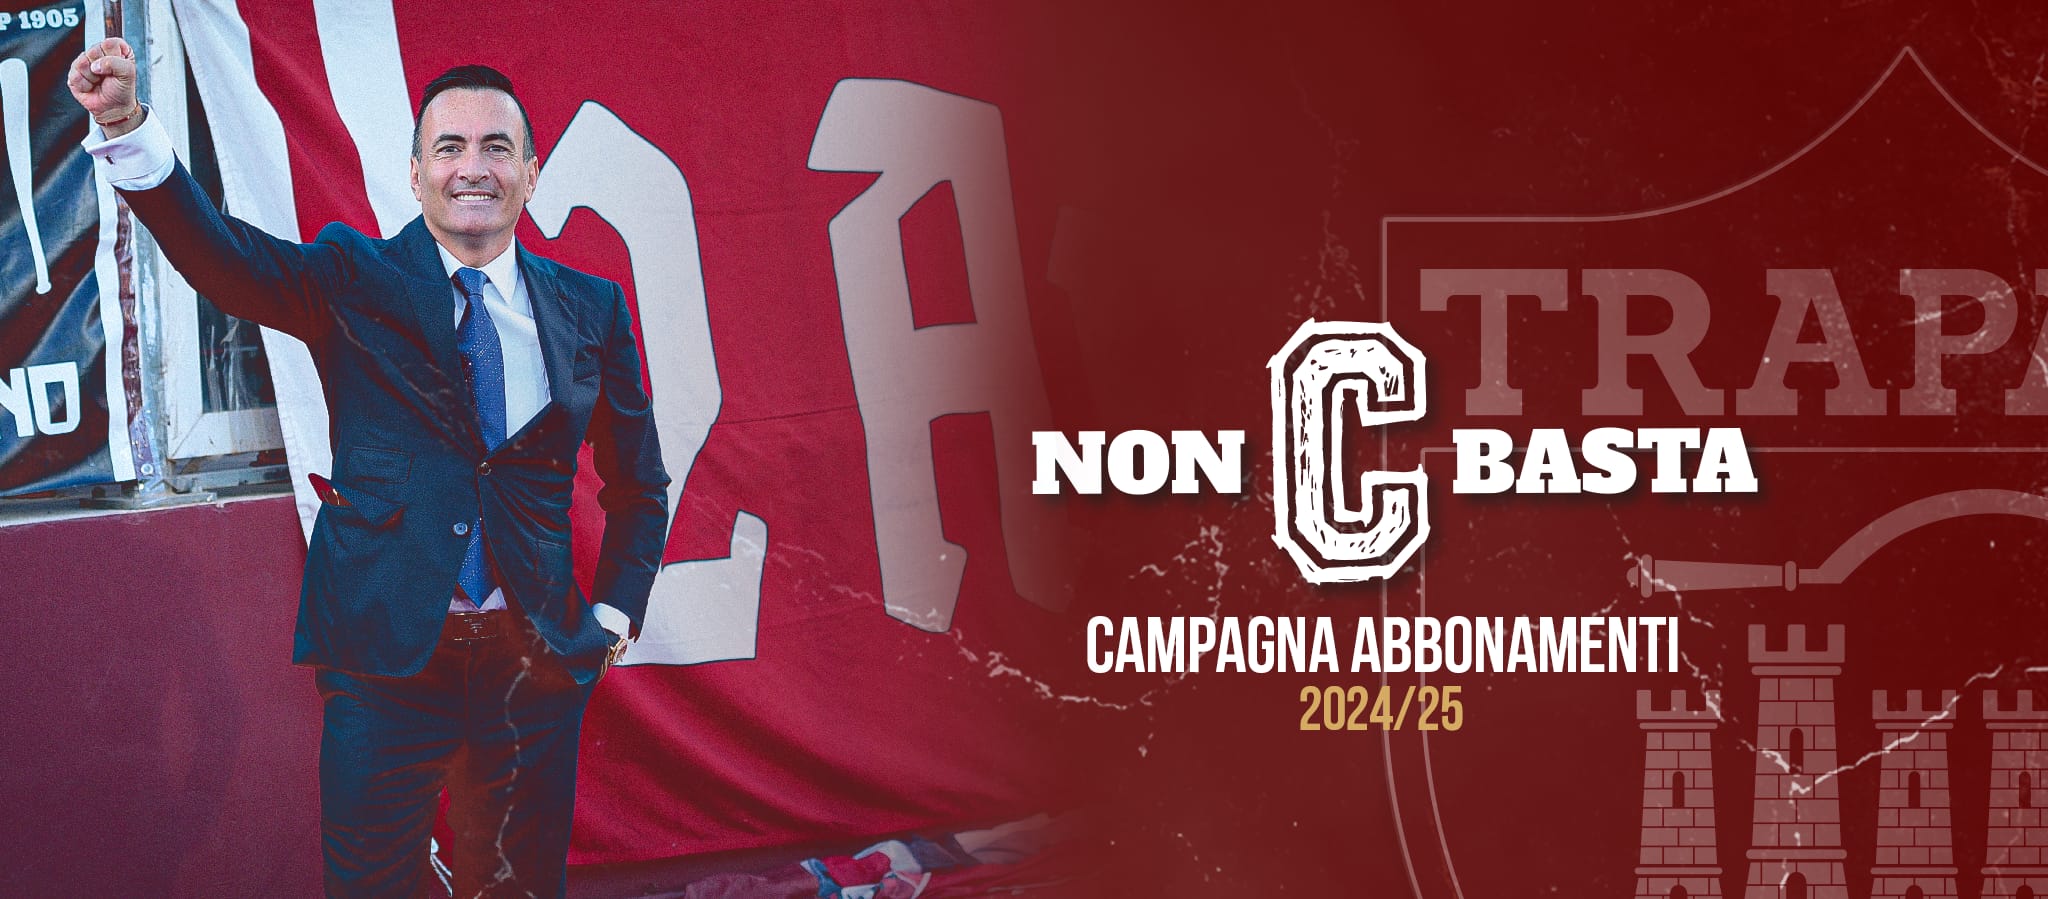 “Non C basta”, al via la campagna abbonamenti 2024/25 del Trapani Calcio